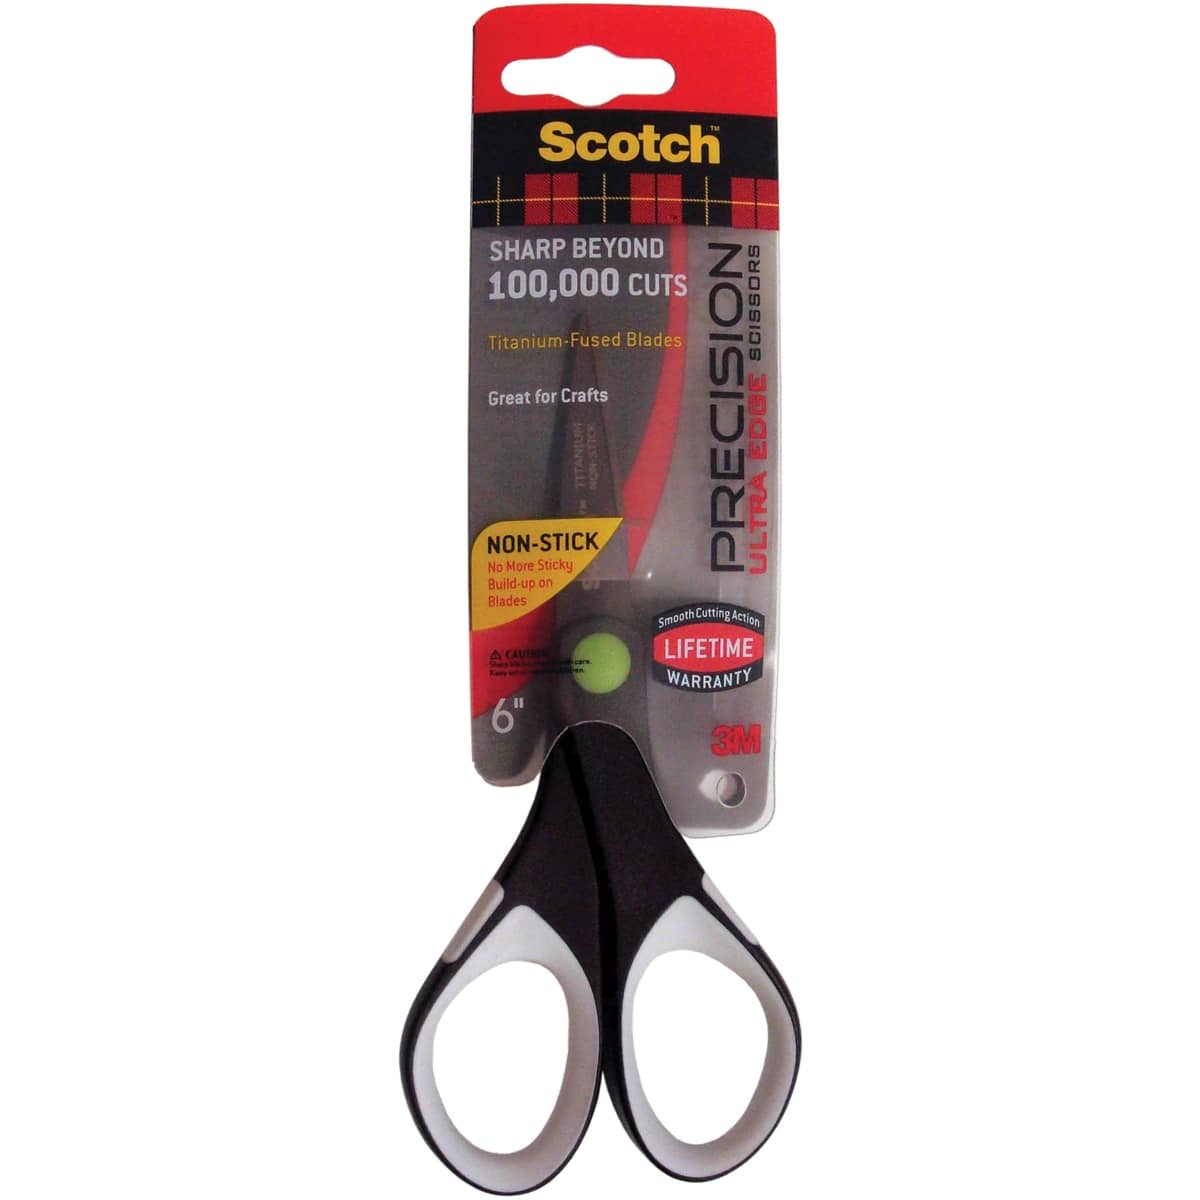 3M Scotch Brand Precision Scissors